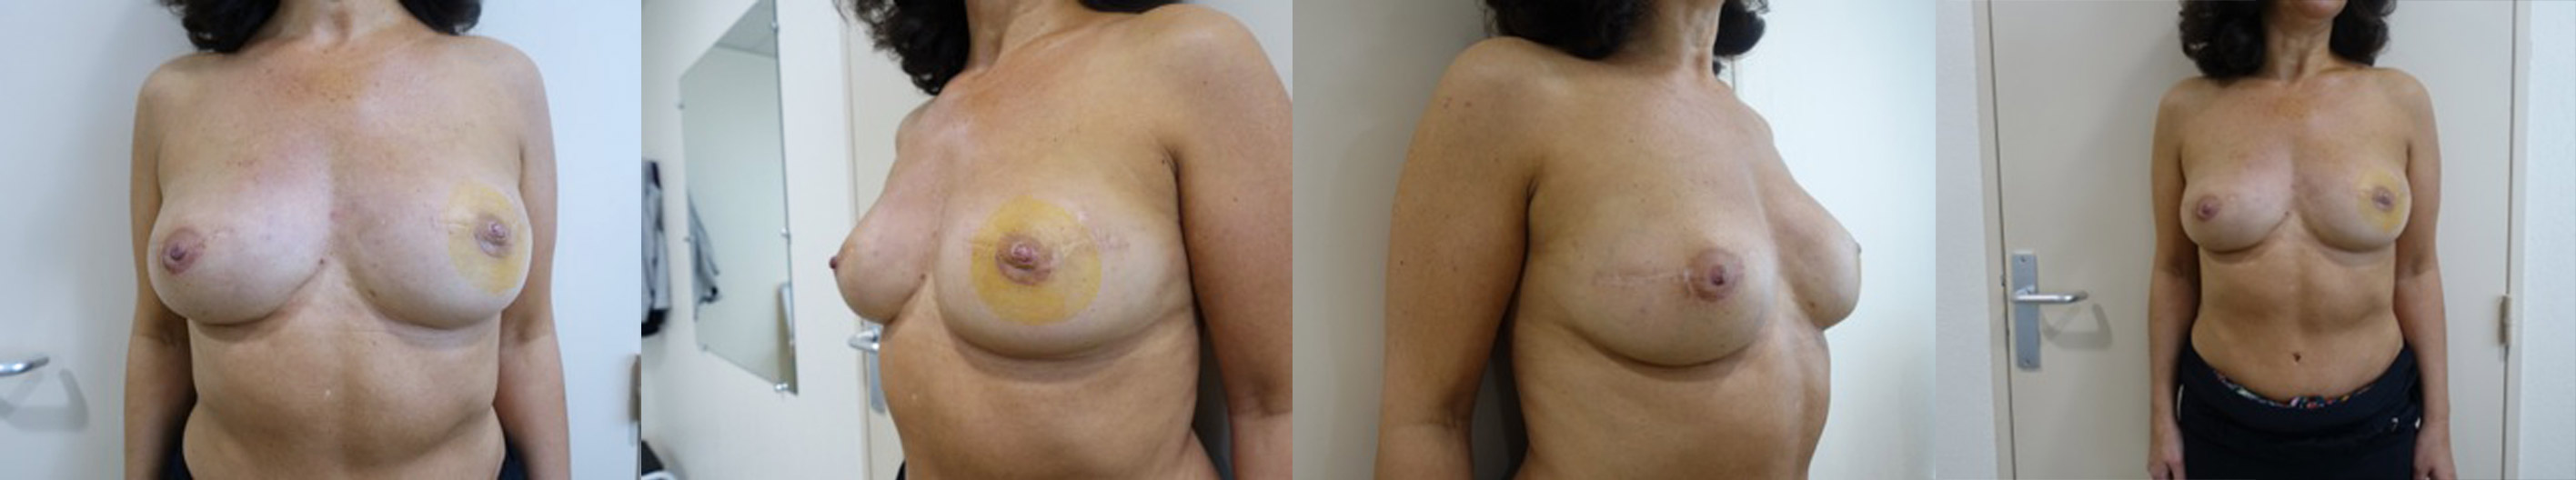 docteur-luini-patiente-1-reconstruction-mammaire